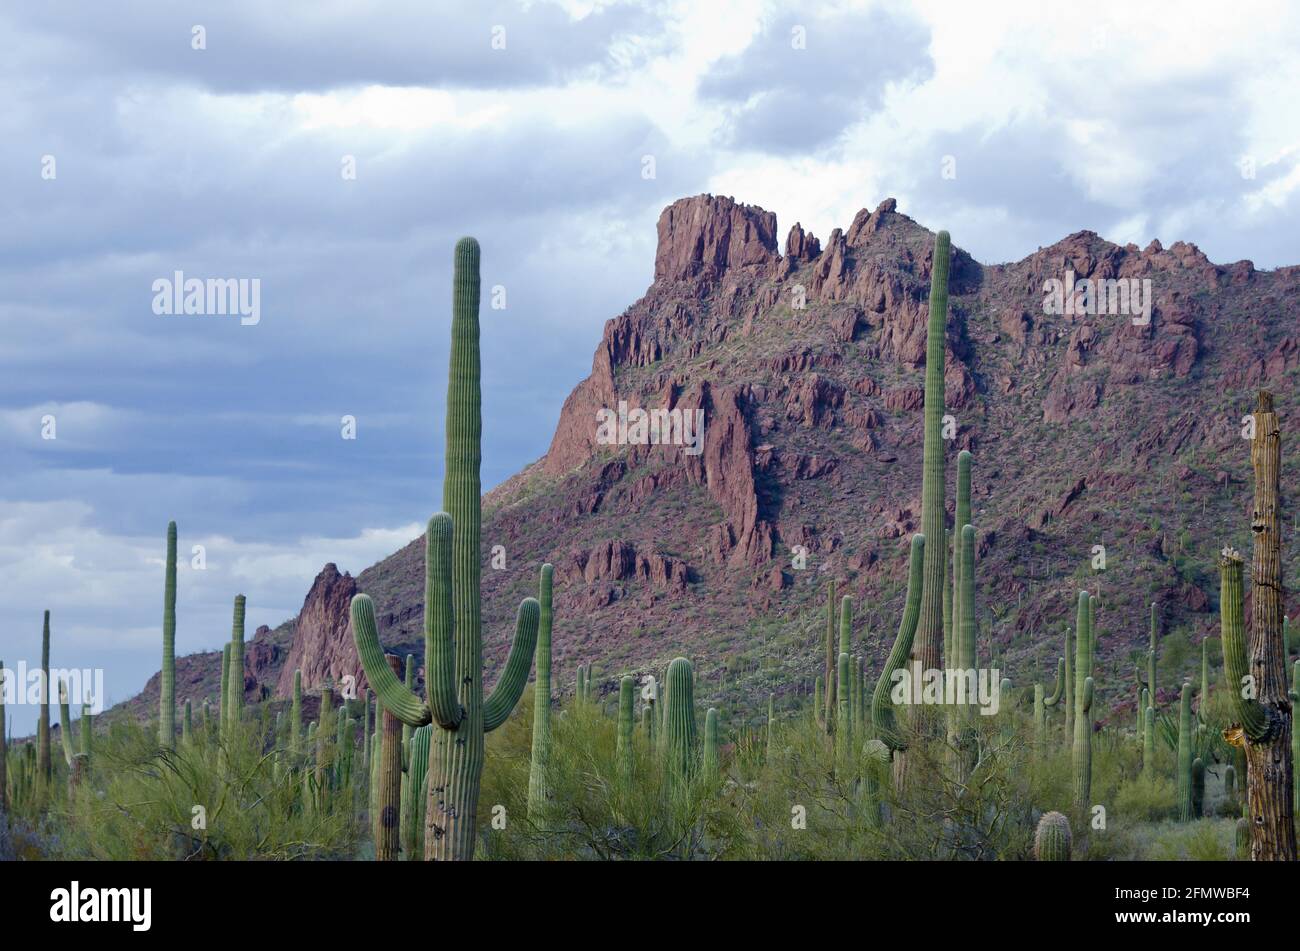 Orgue Pipe Cactus National Monument , une réserve de biosphère de l'UNESCO située à l'extrême sud de l'Arizona qui partage une frontière avec le Mexique Banque D'Images